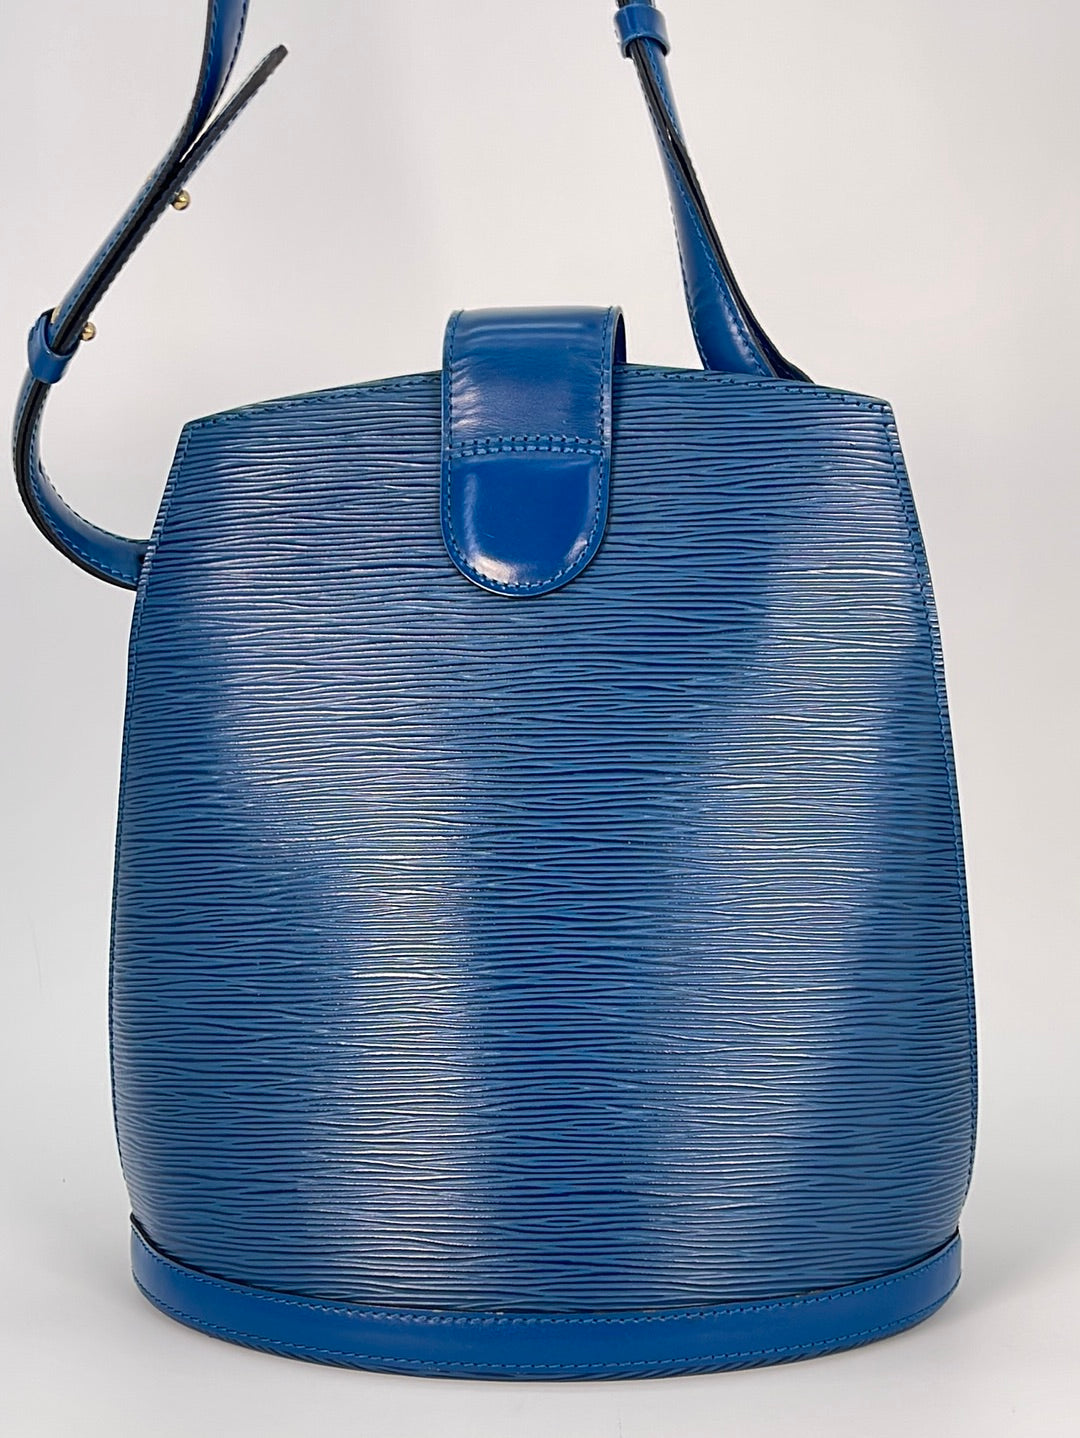 Preloved Louis Vuitton Cluny Shoulder Bag Blue Epi Leather VI0955 032923 *** Lightening Deal Apr 18 ***